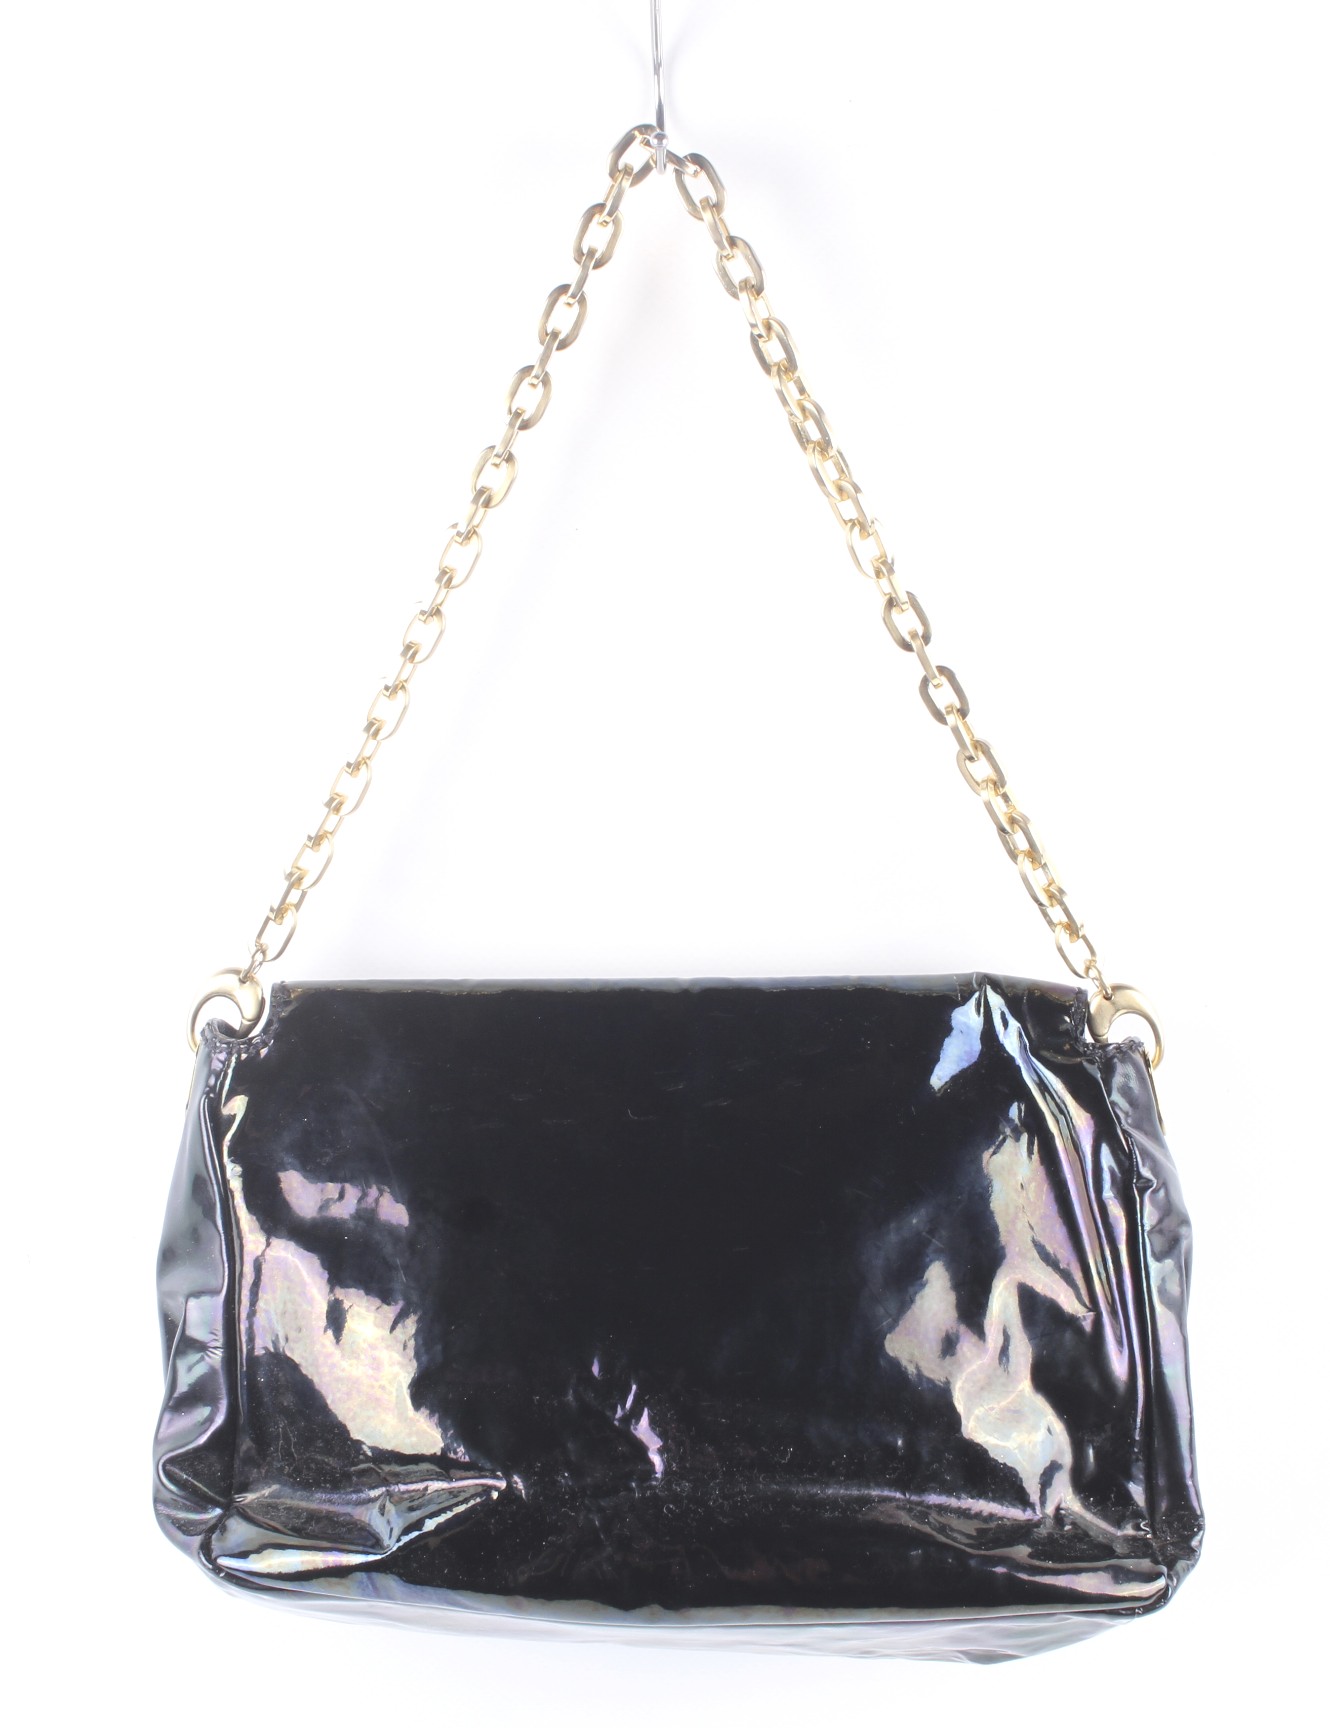 A Jimmy Choo 'Hobo' black patent leather shoulder bag. - Image 2 of 4